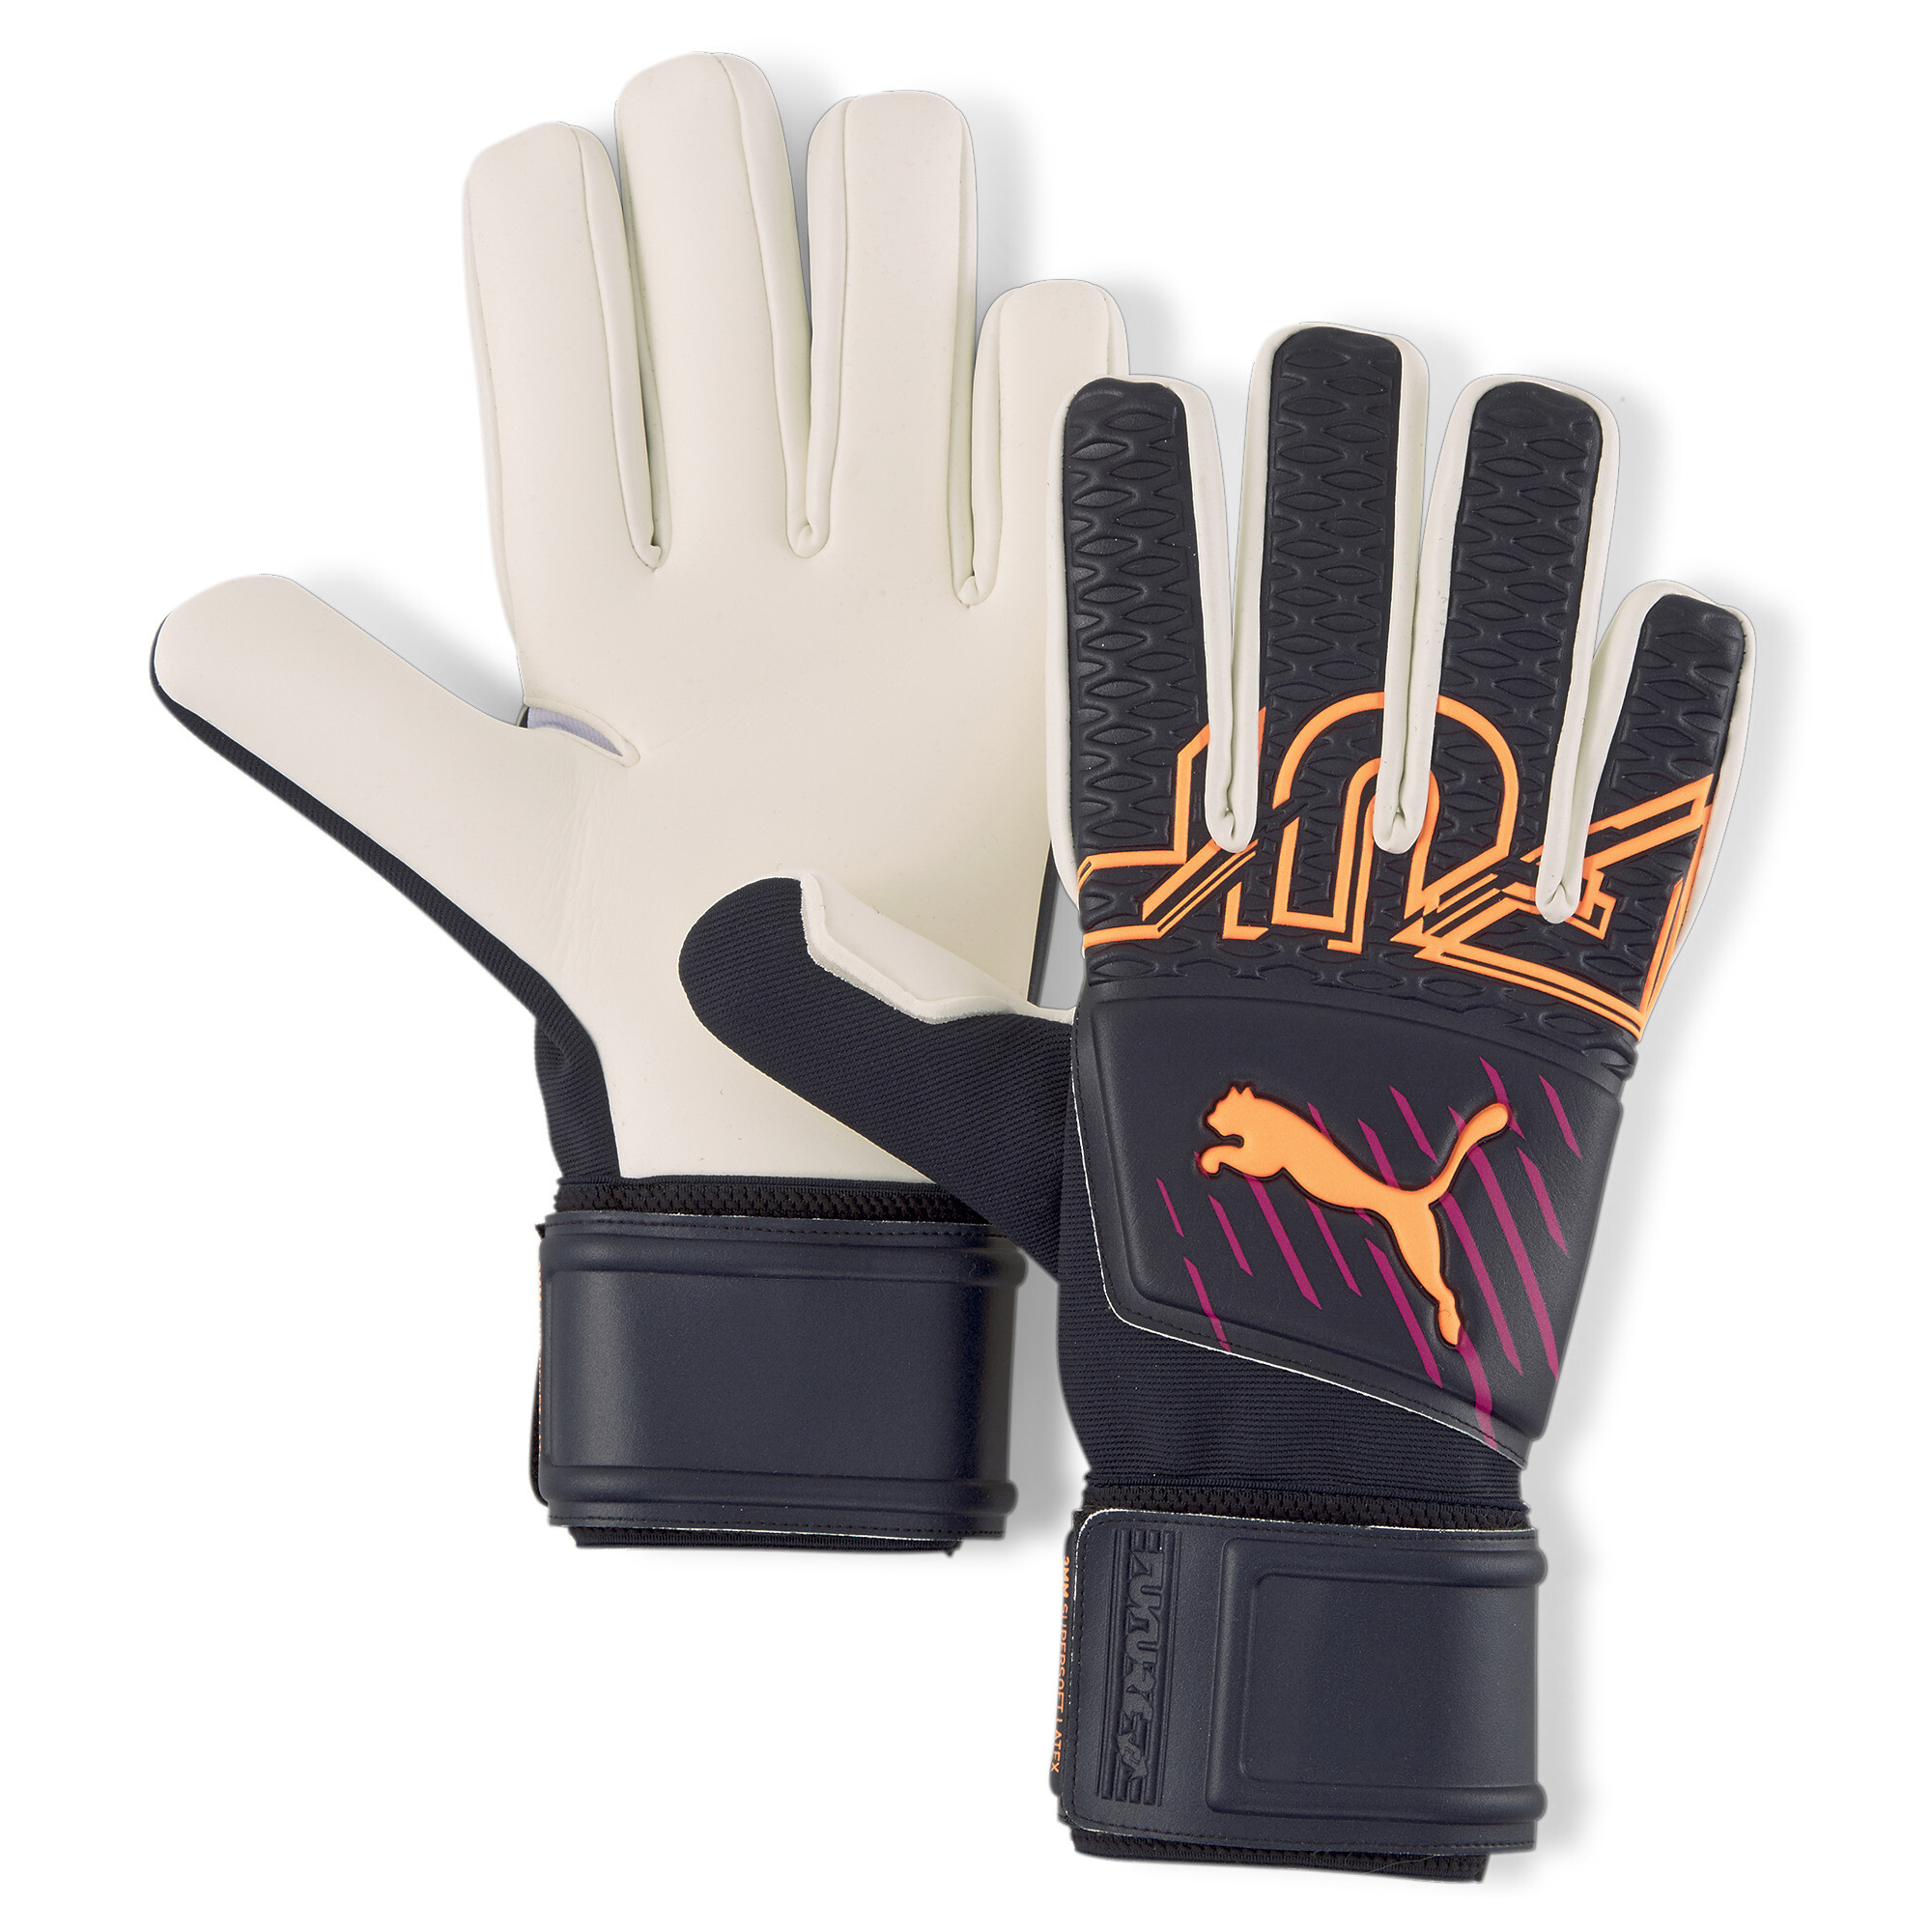 Puma FUTURE Grip 3 Negative Cut Goalkeeper Gloves, Blue, Size 4, Accessories